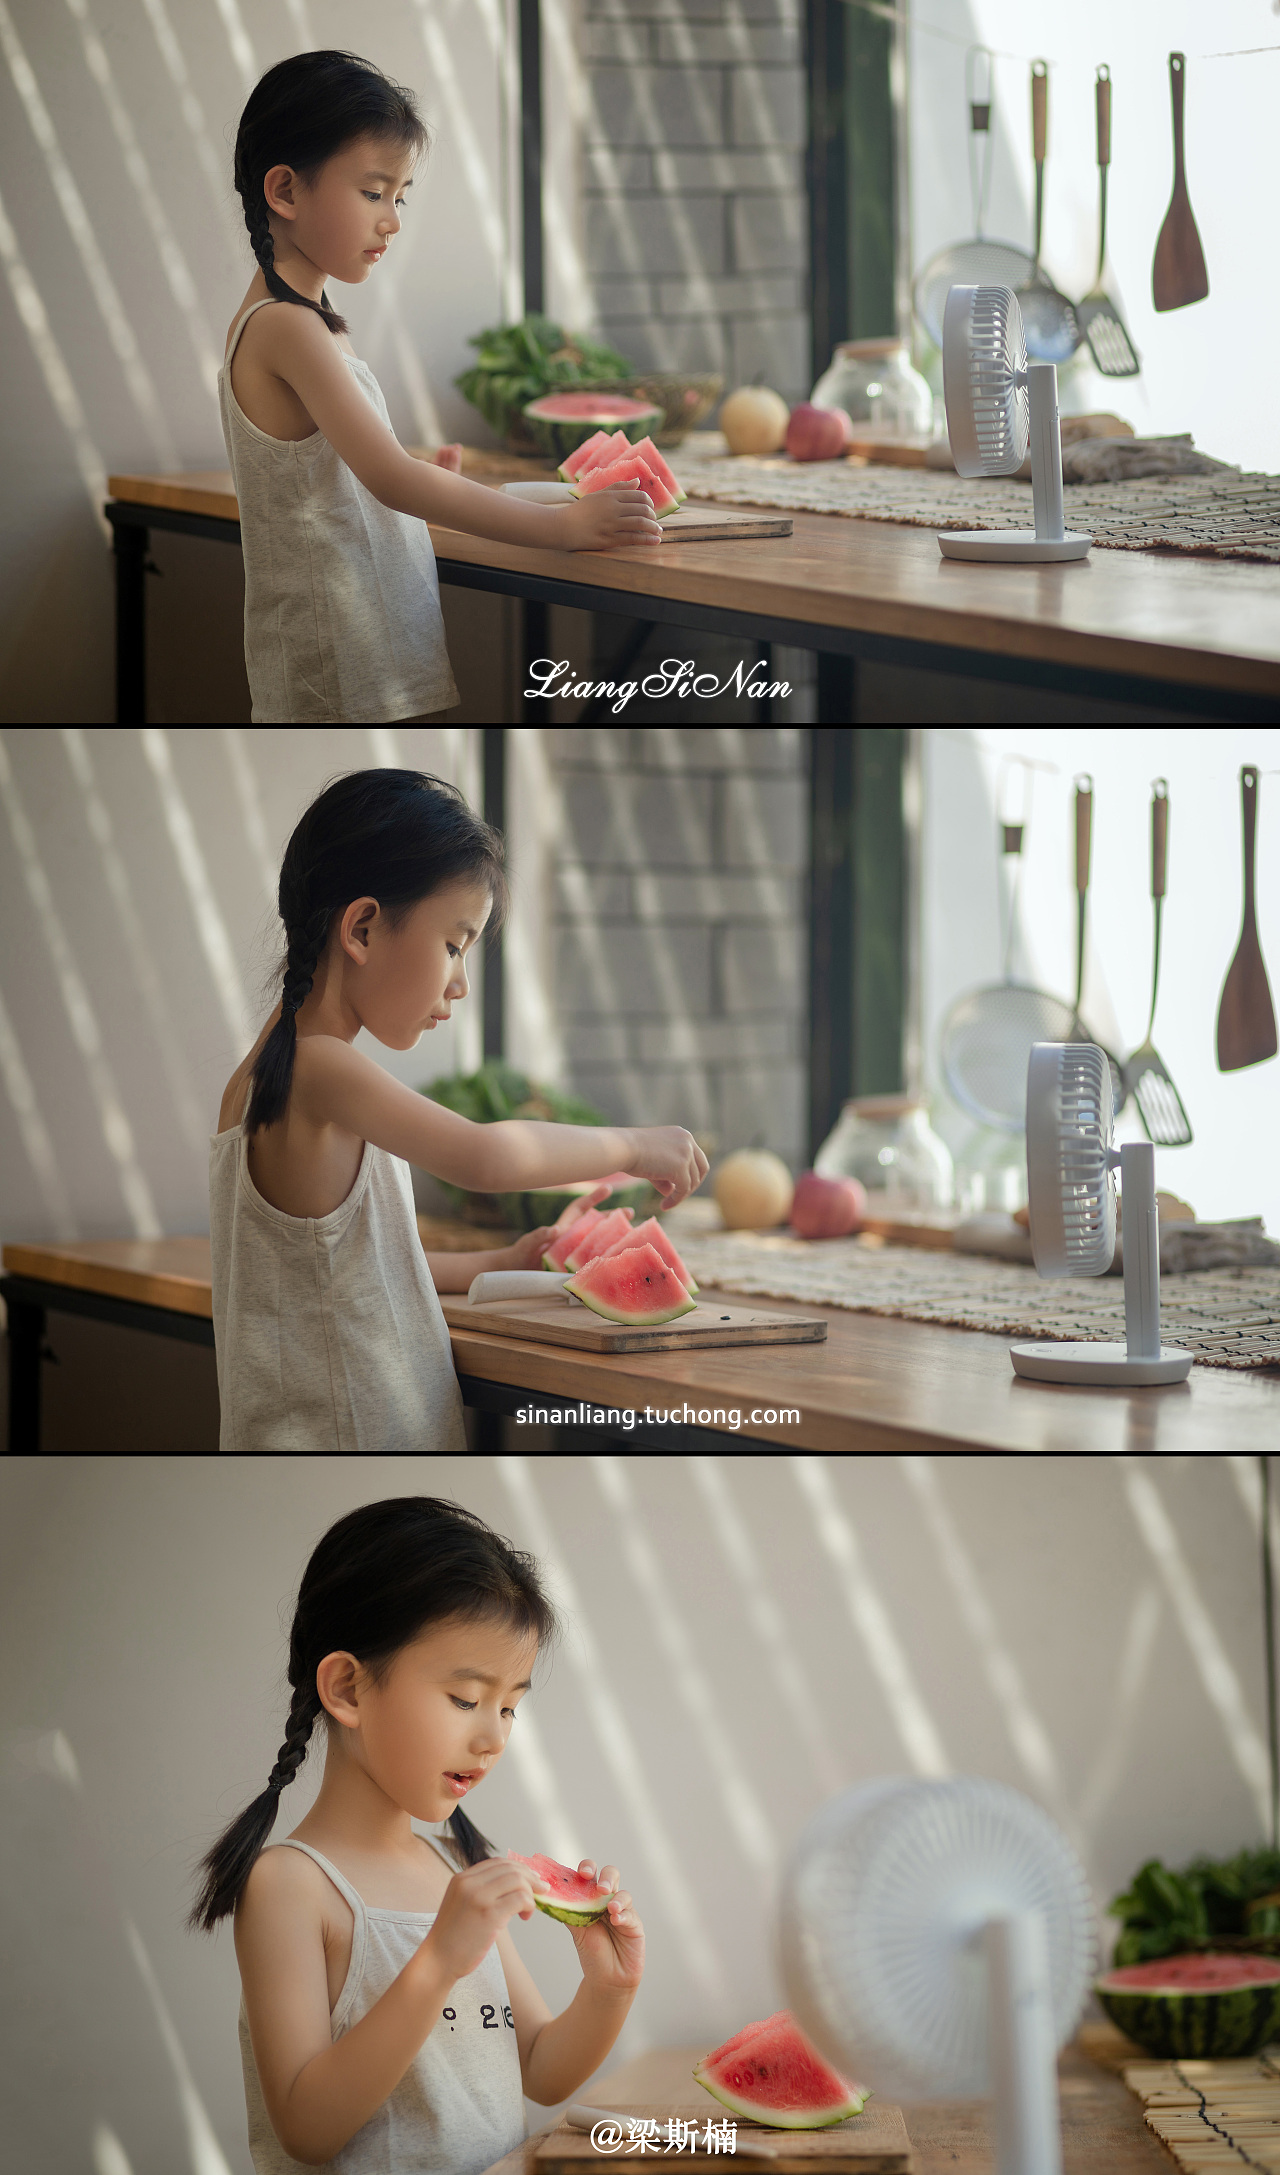 凉快的女孩喝从杯子的果汁并且拿着冰淇凌 库存图片. 图片 包括有 锥体, 颜色, 玻璃, 魅力, 衣裳 - 117223223